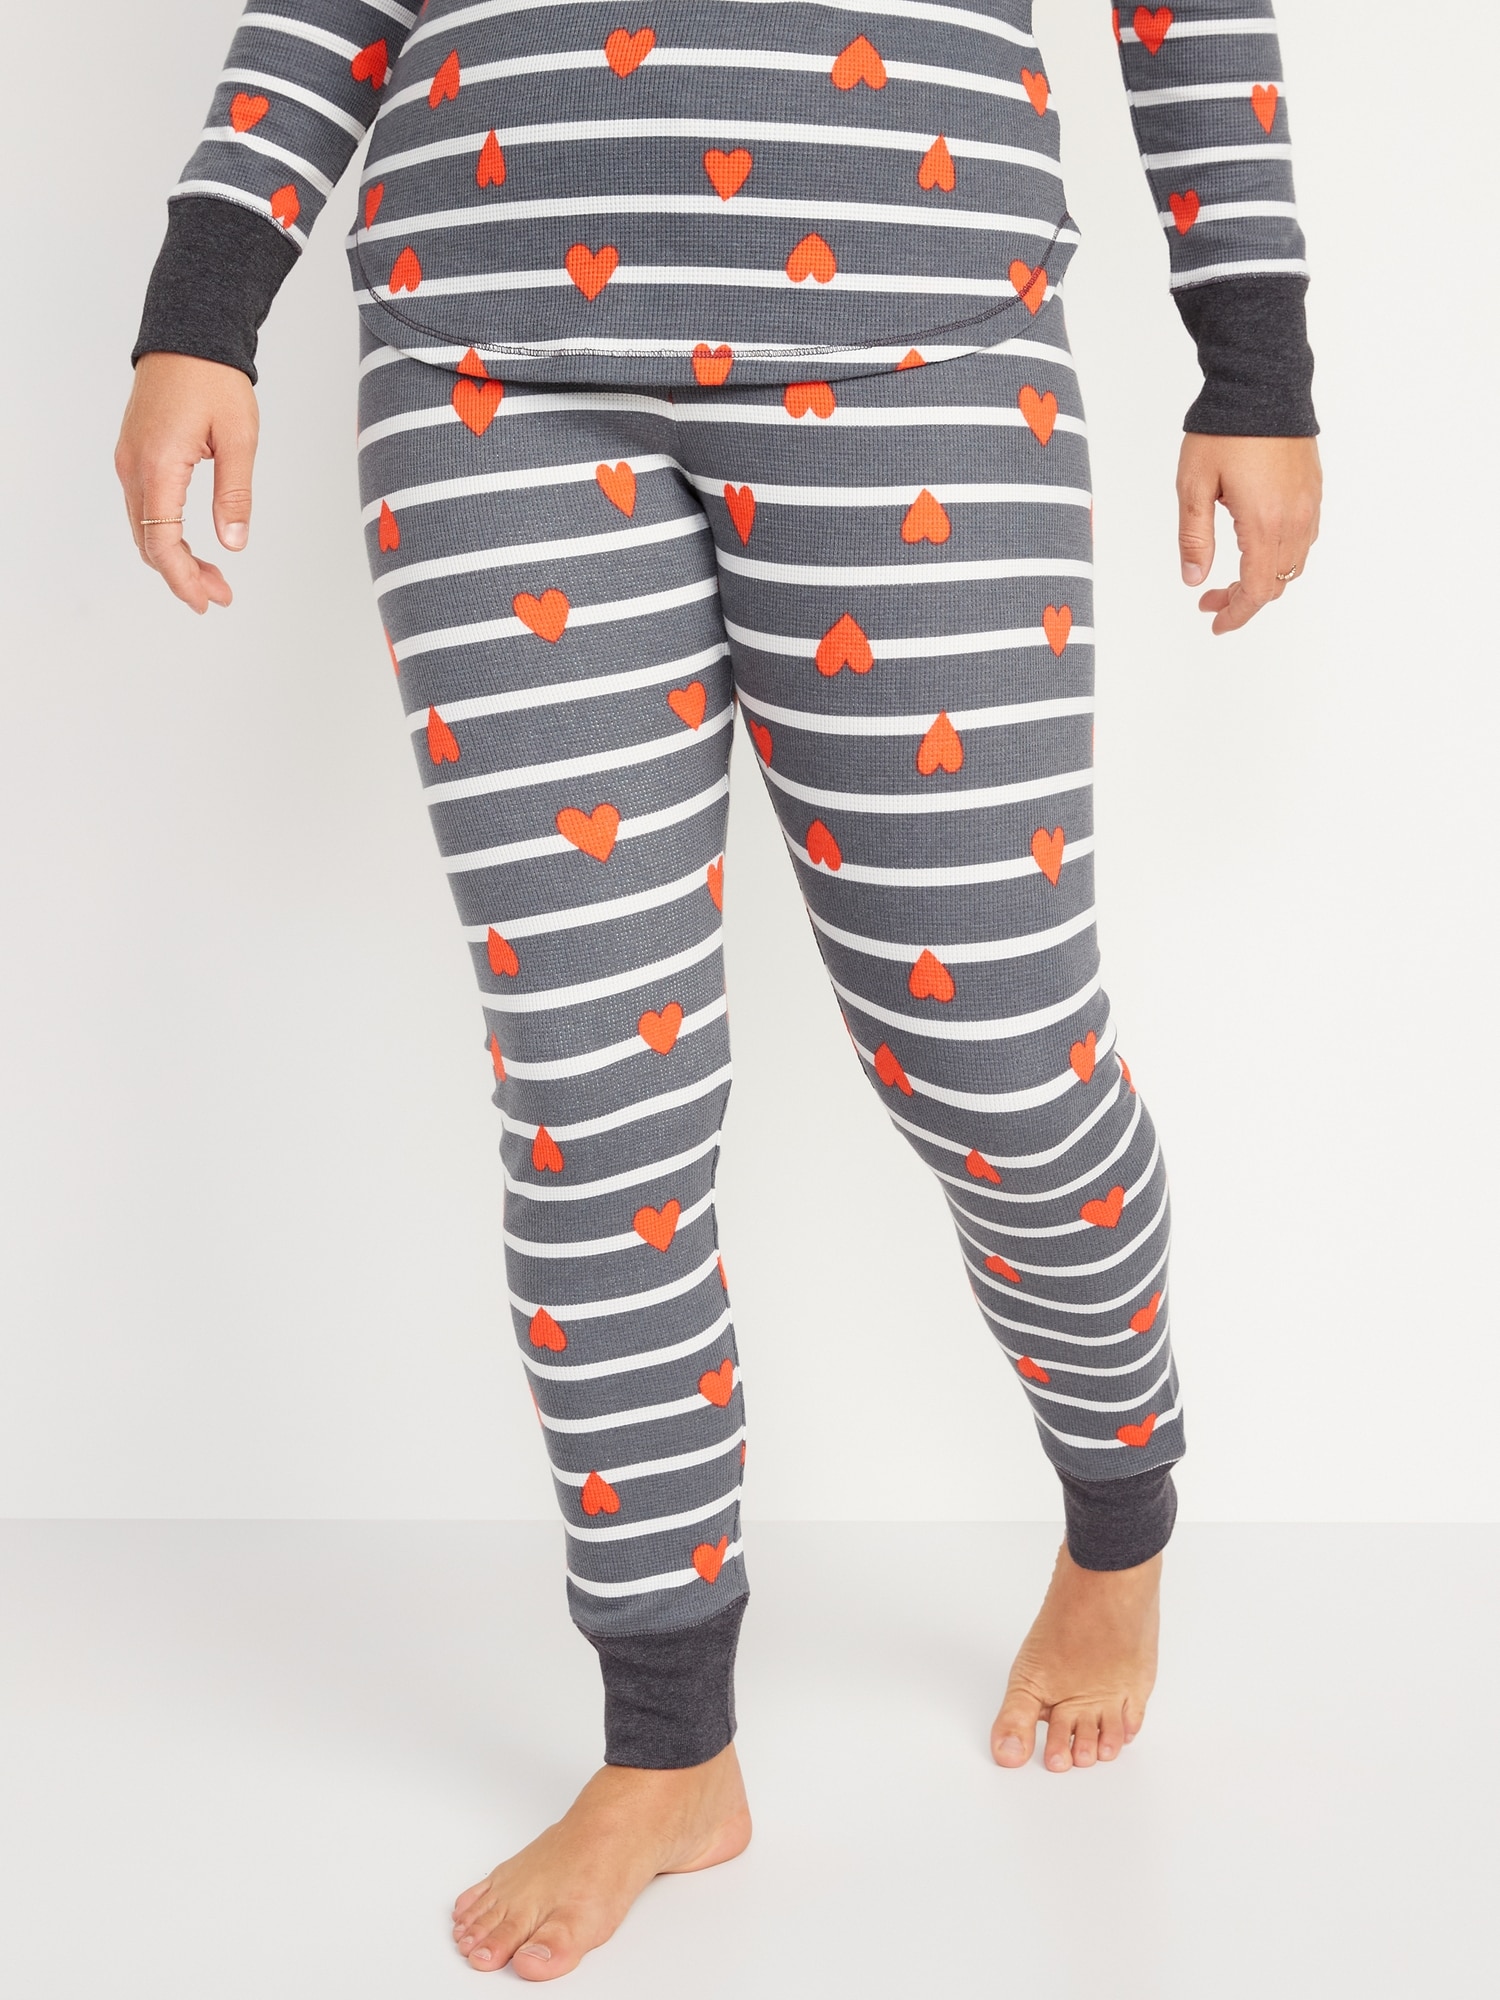 Matching Printed Thermal Pajama Set